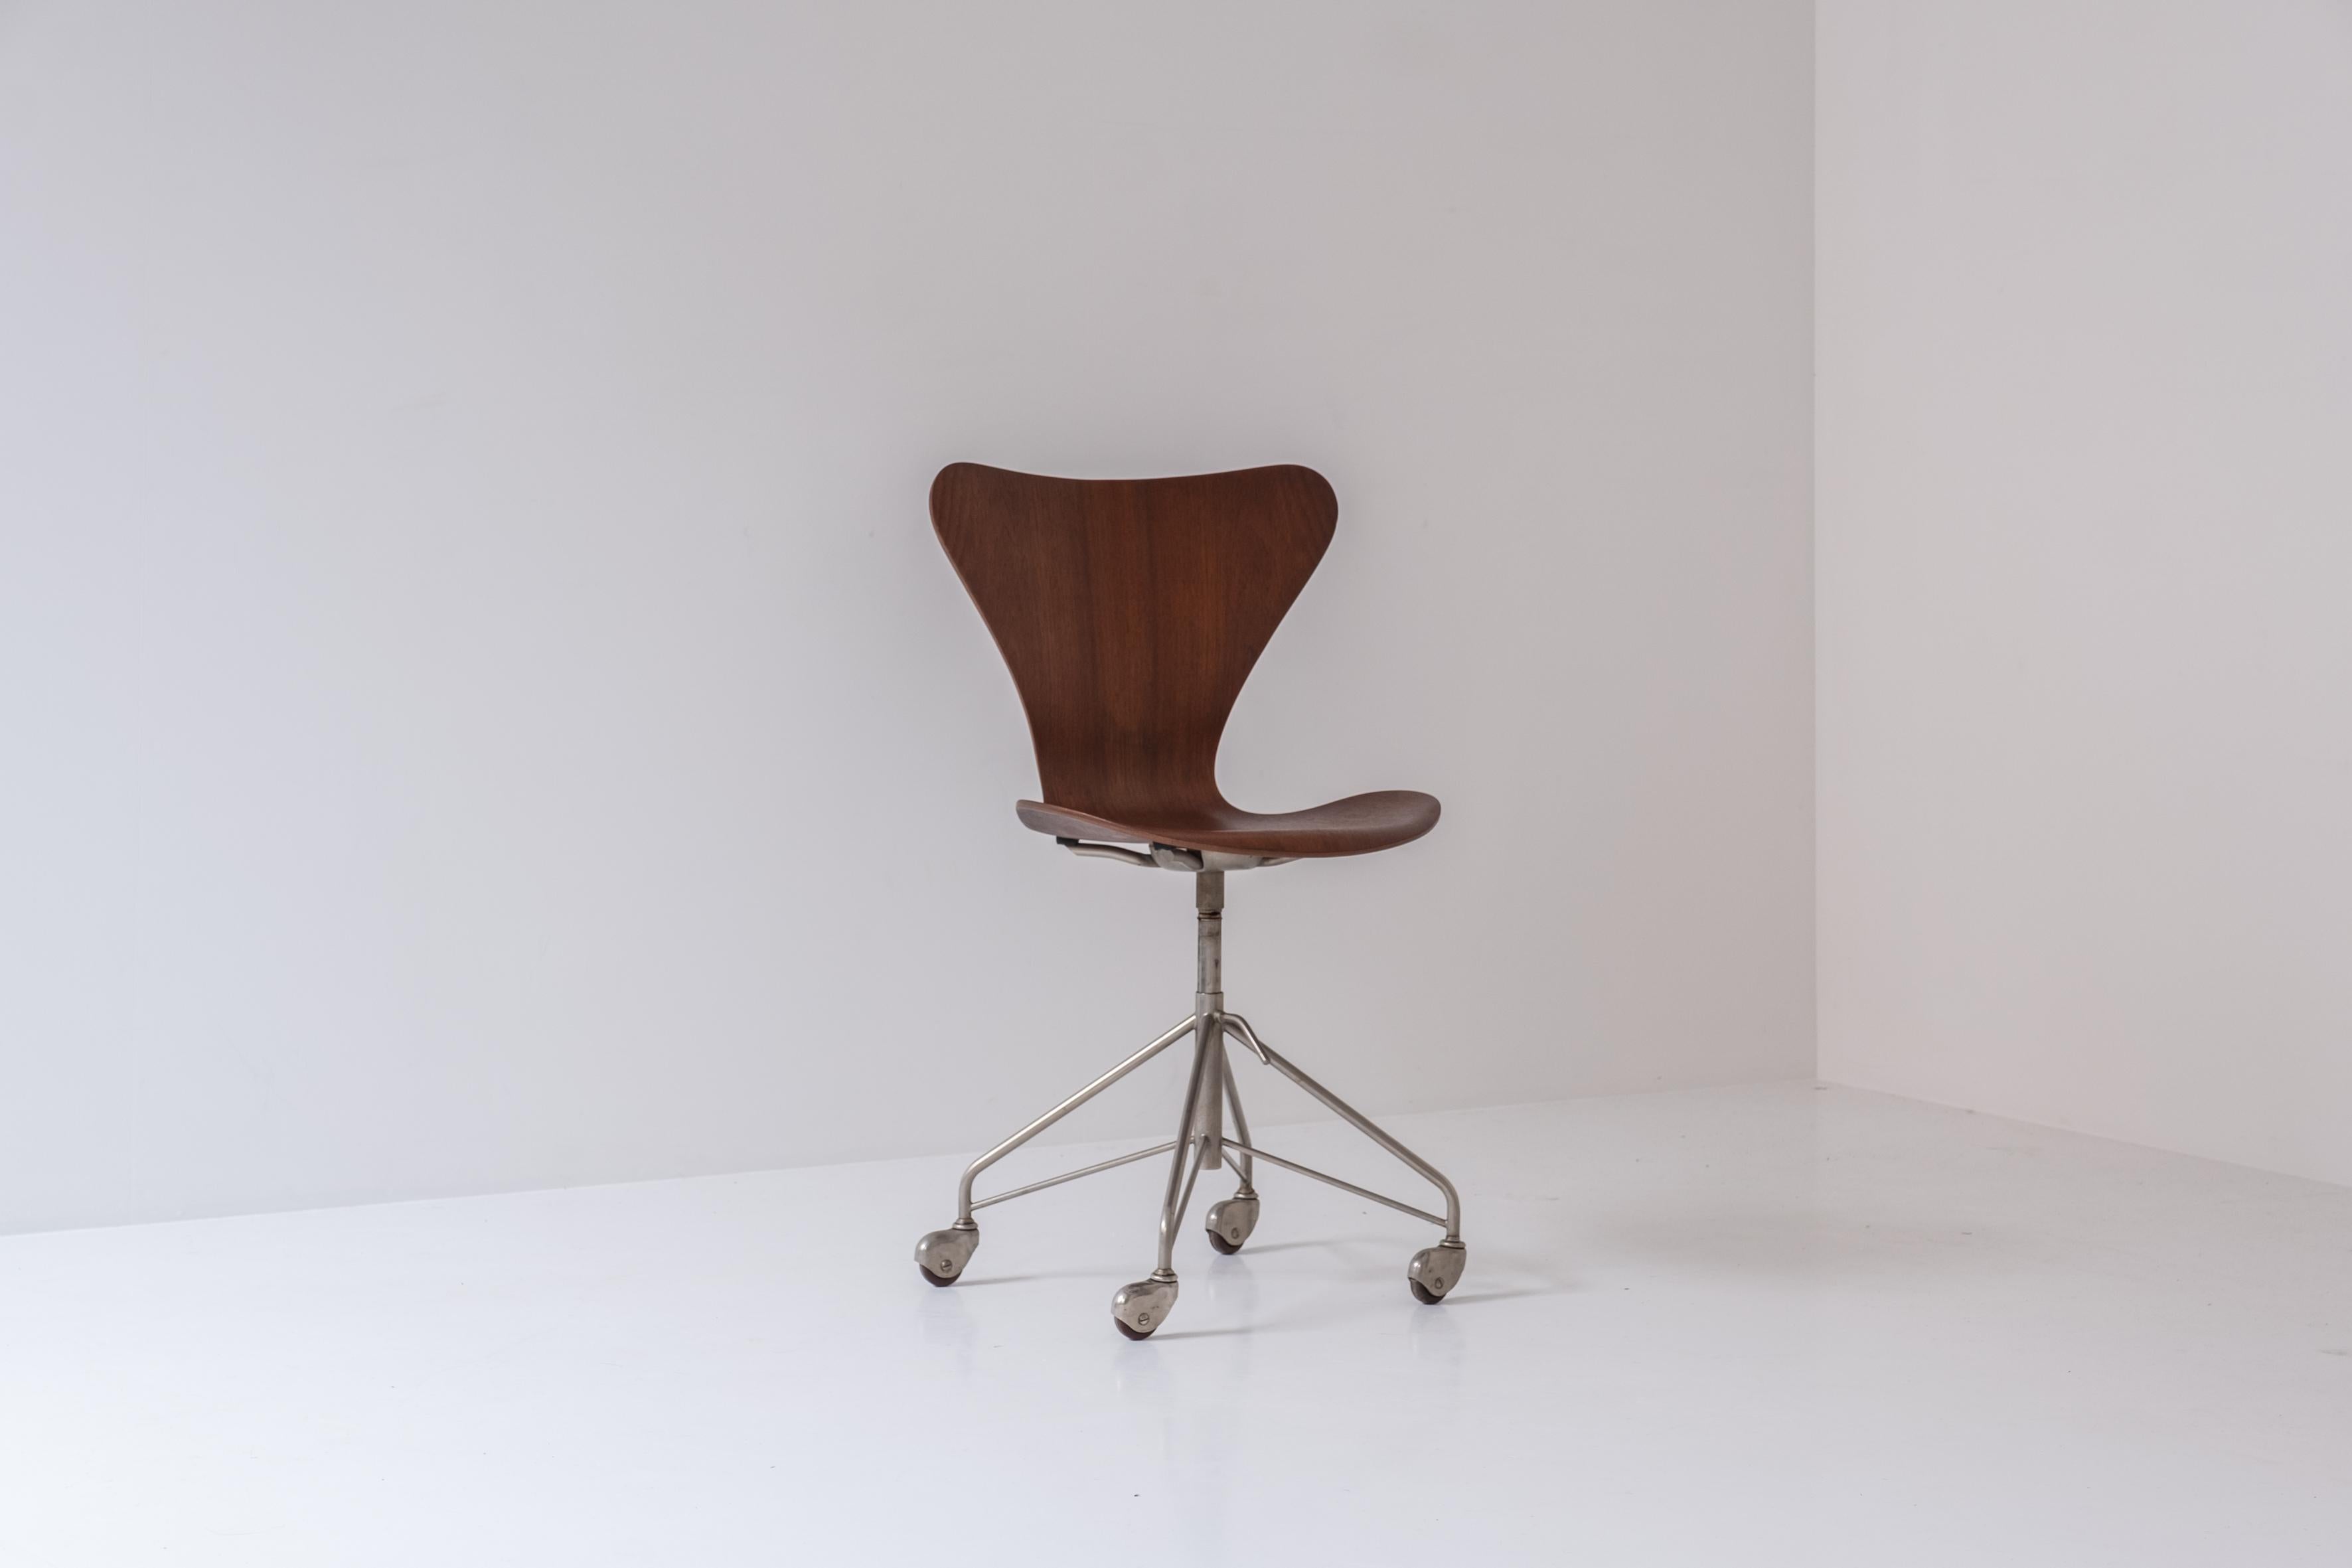 Scandinavian Modern ‘3117’ Swivel Desk Chair by Arne Jacobsen for Fritz Hansen, Denmark, 1955